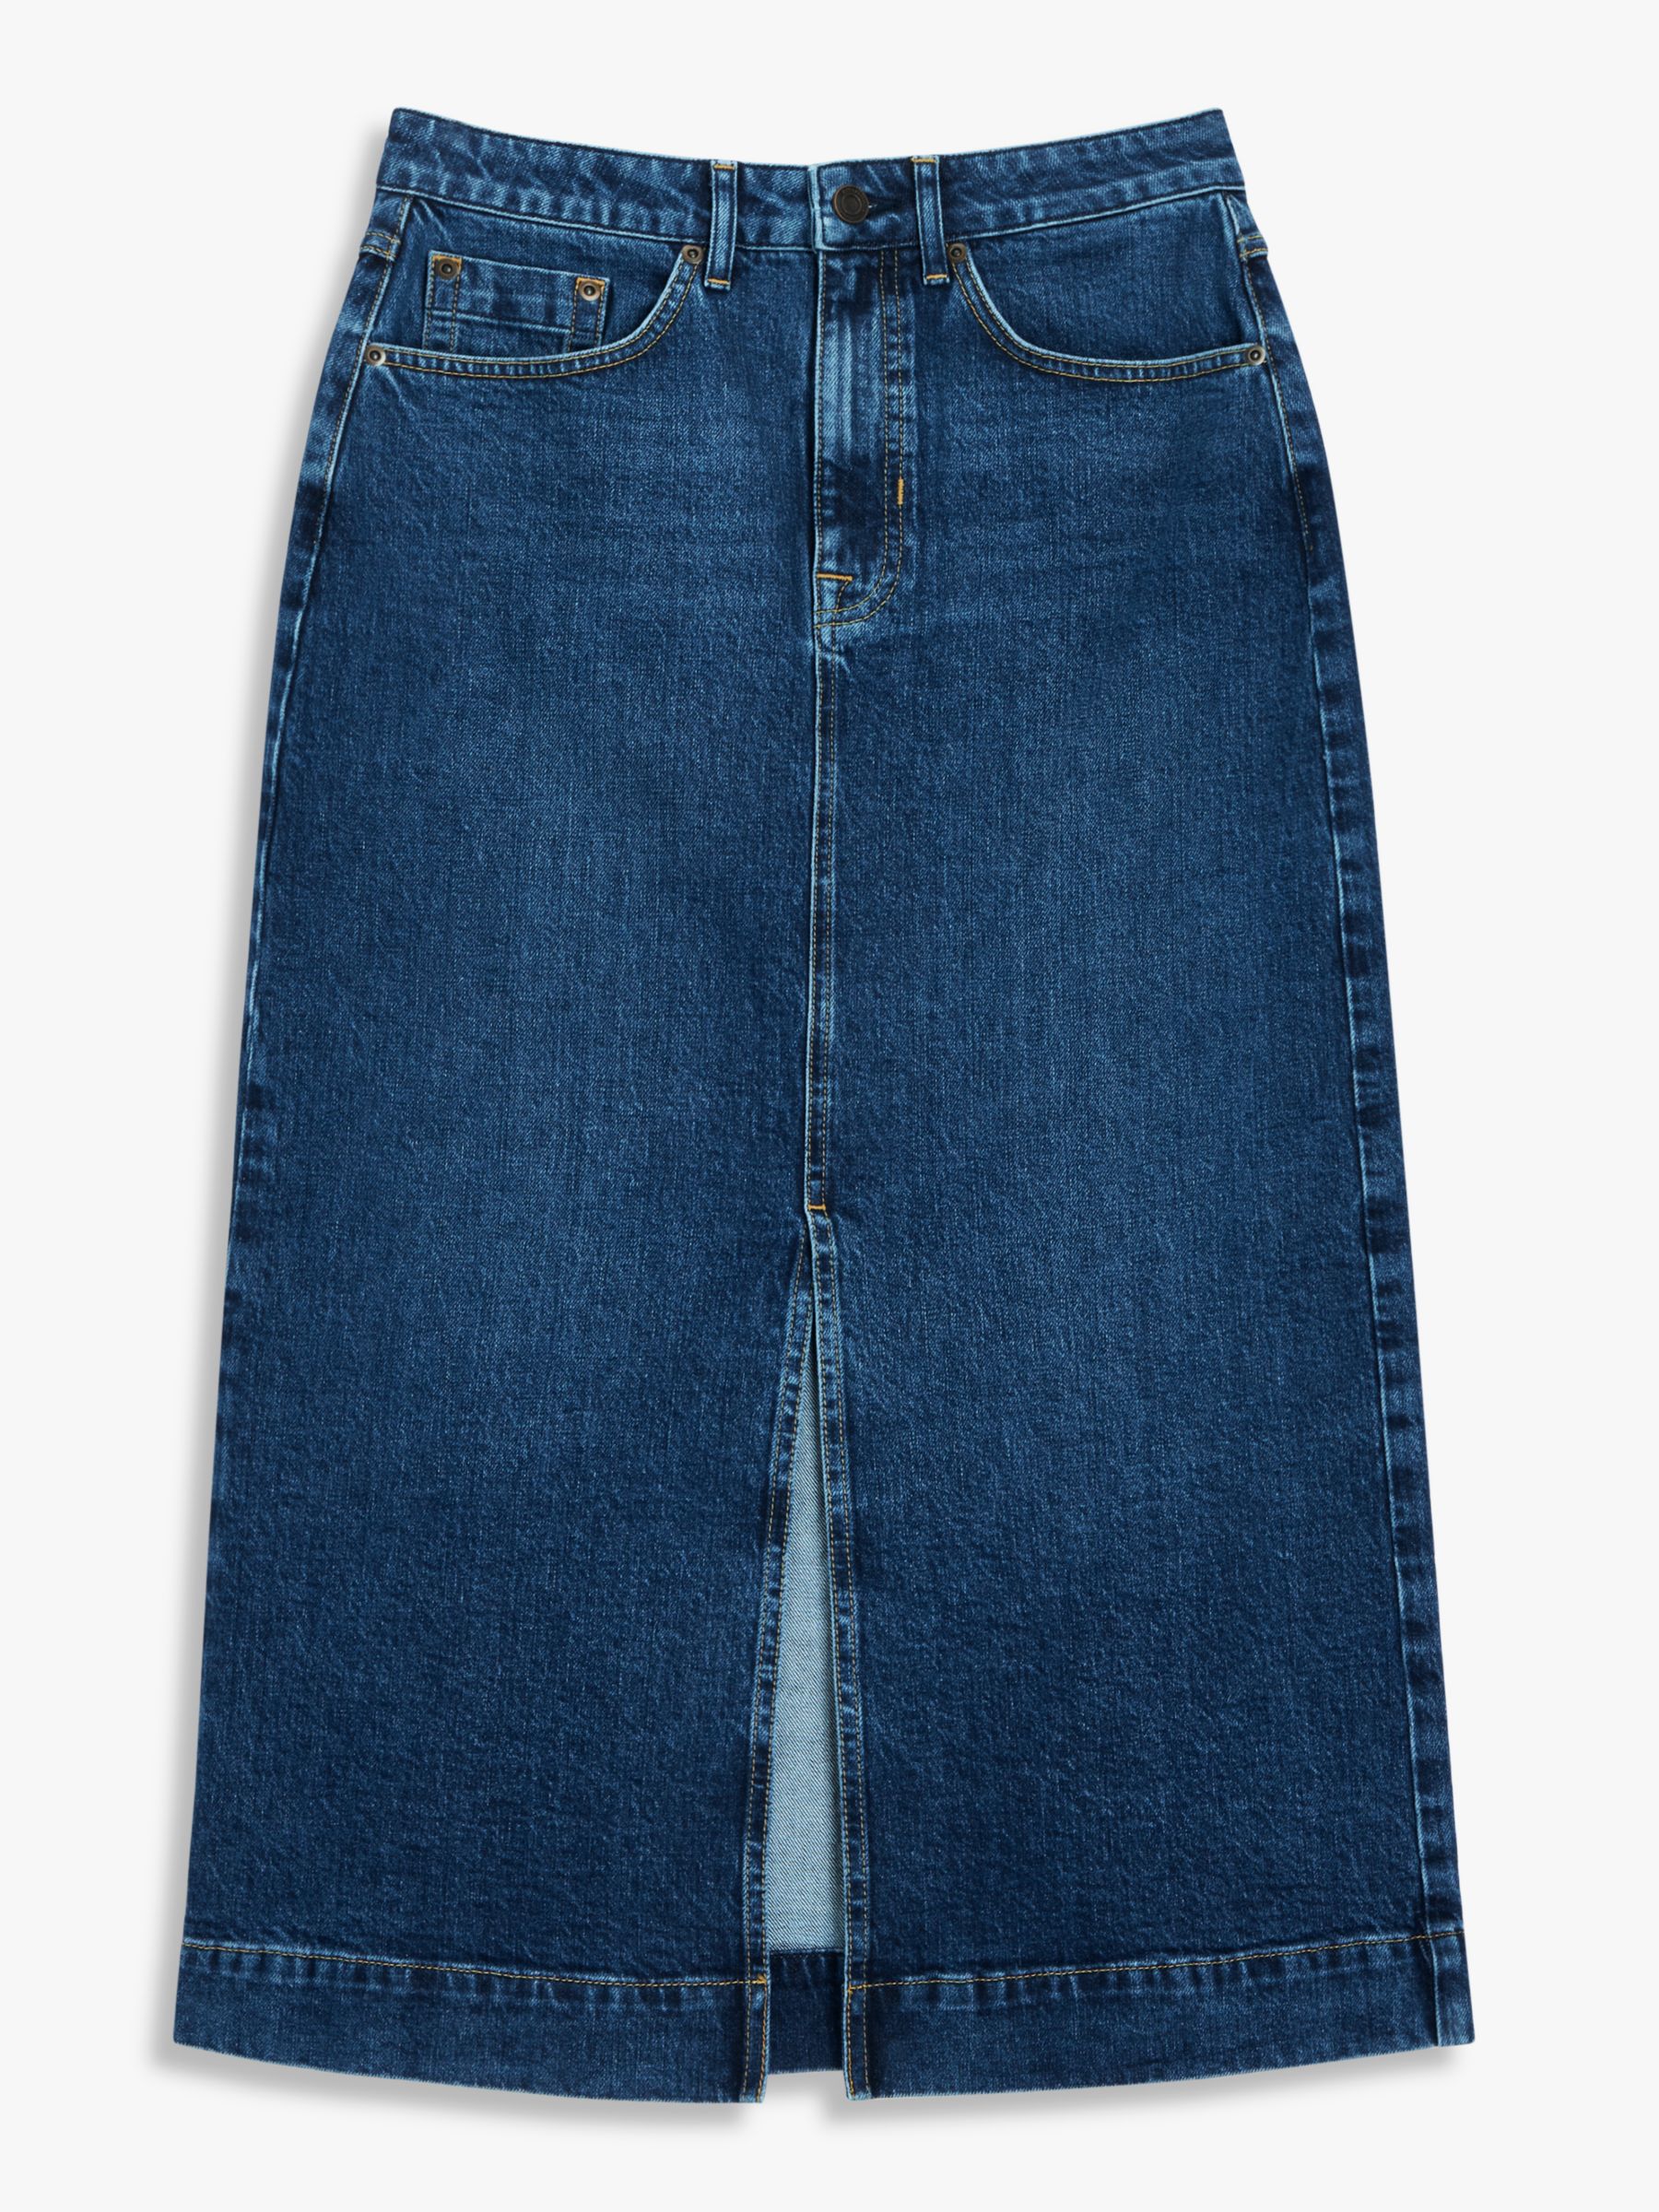 John Lewis Denim Skirt, Blue, 10